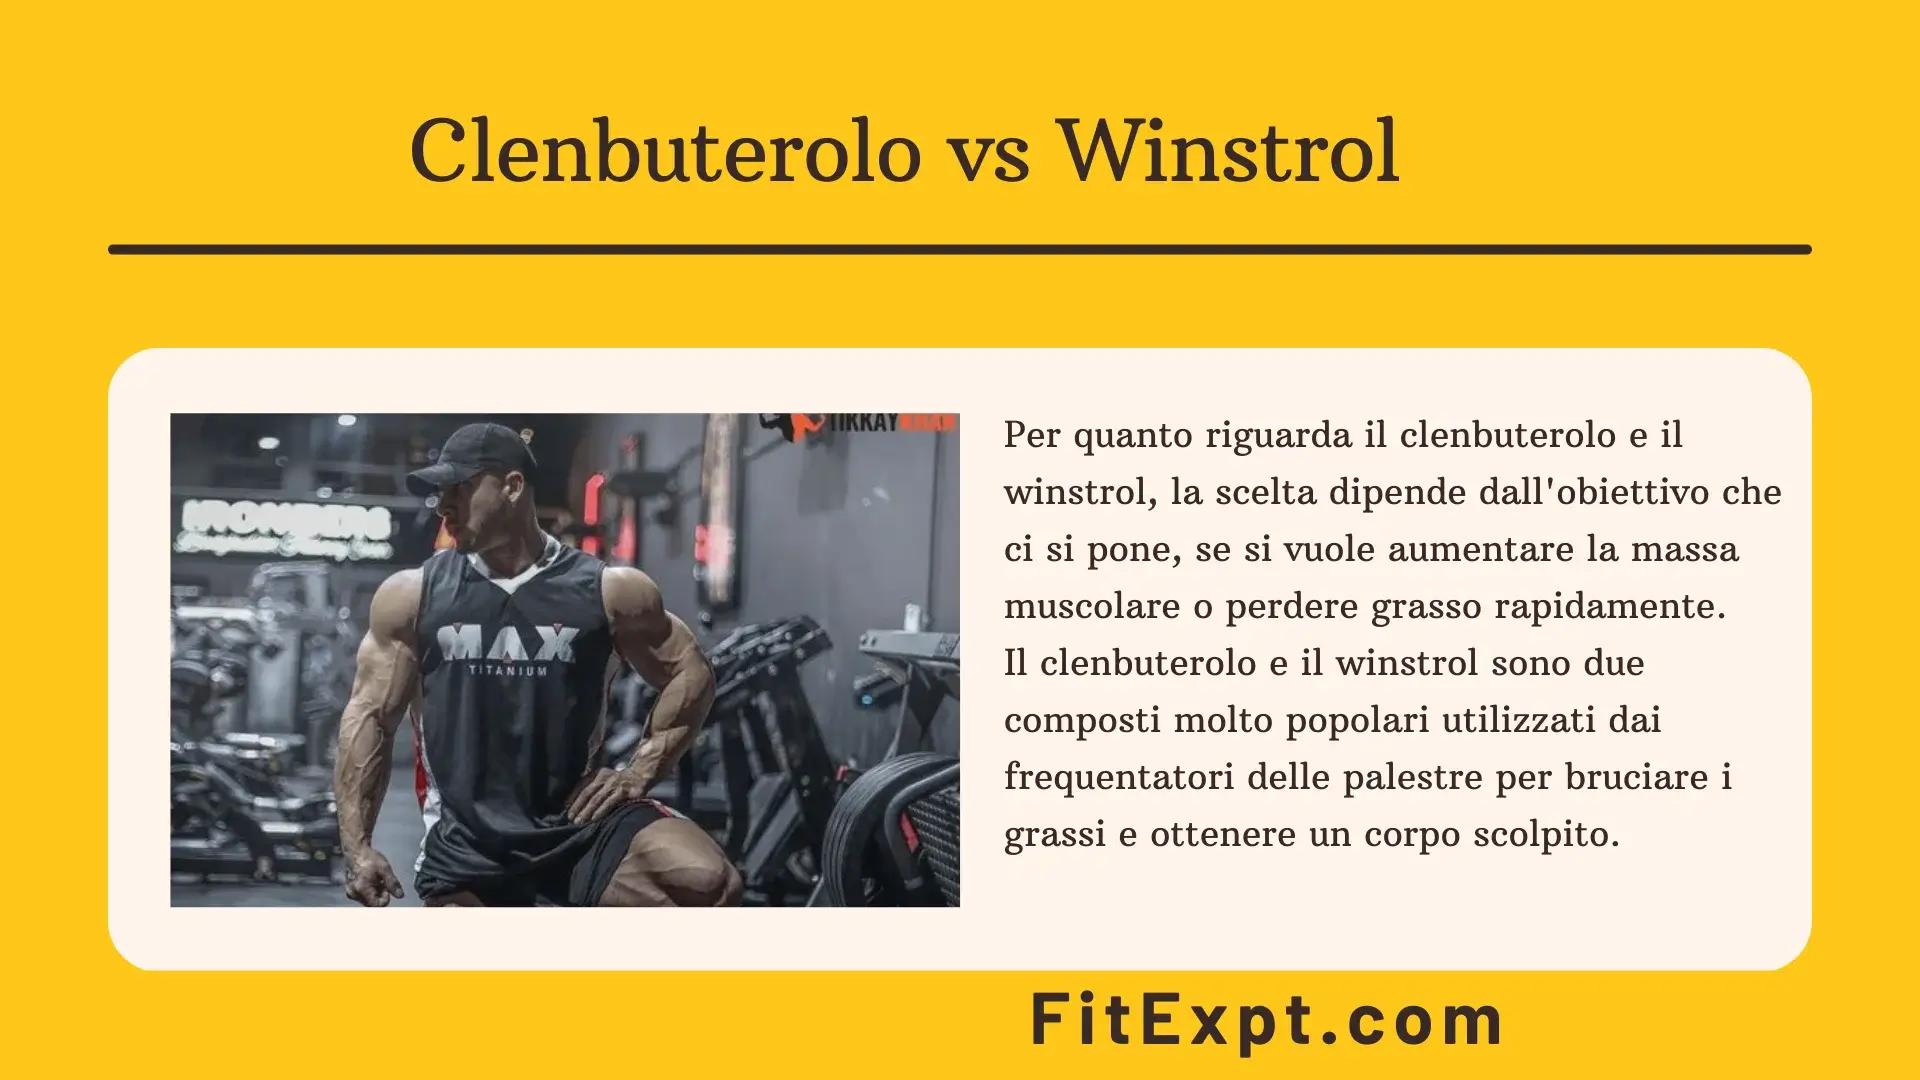 Clenbuterolo vs Winstrol